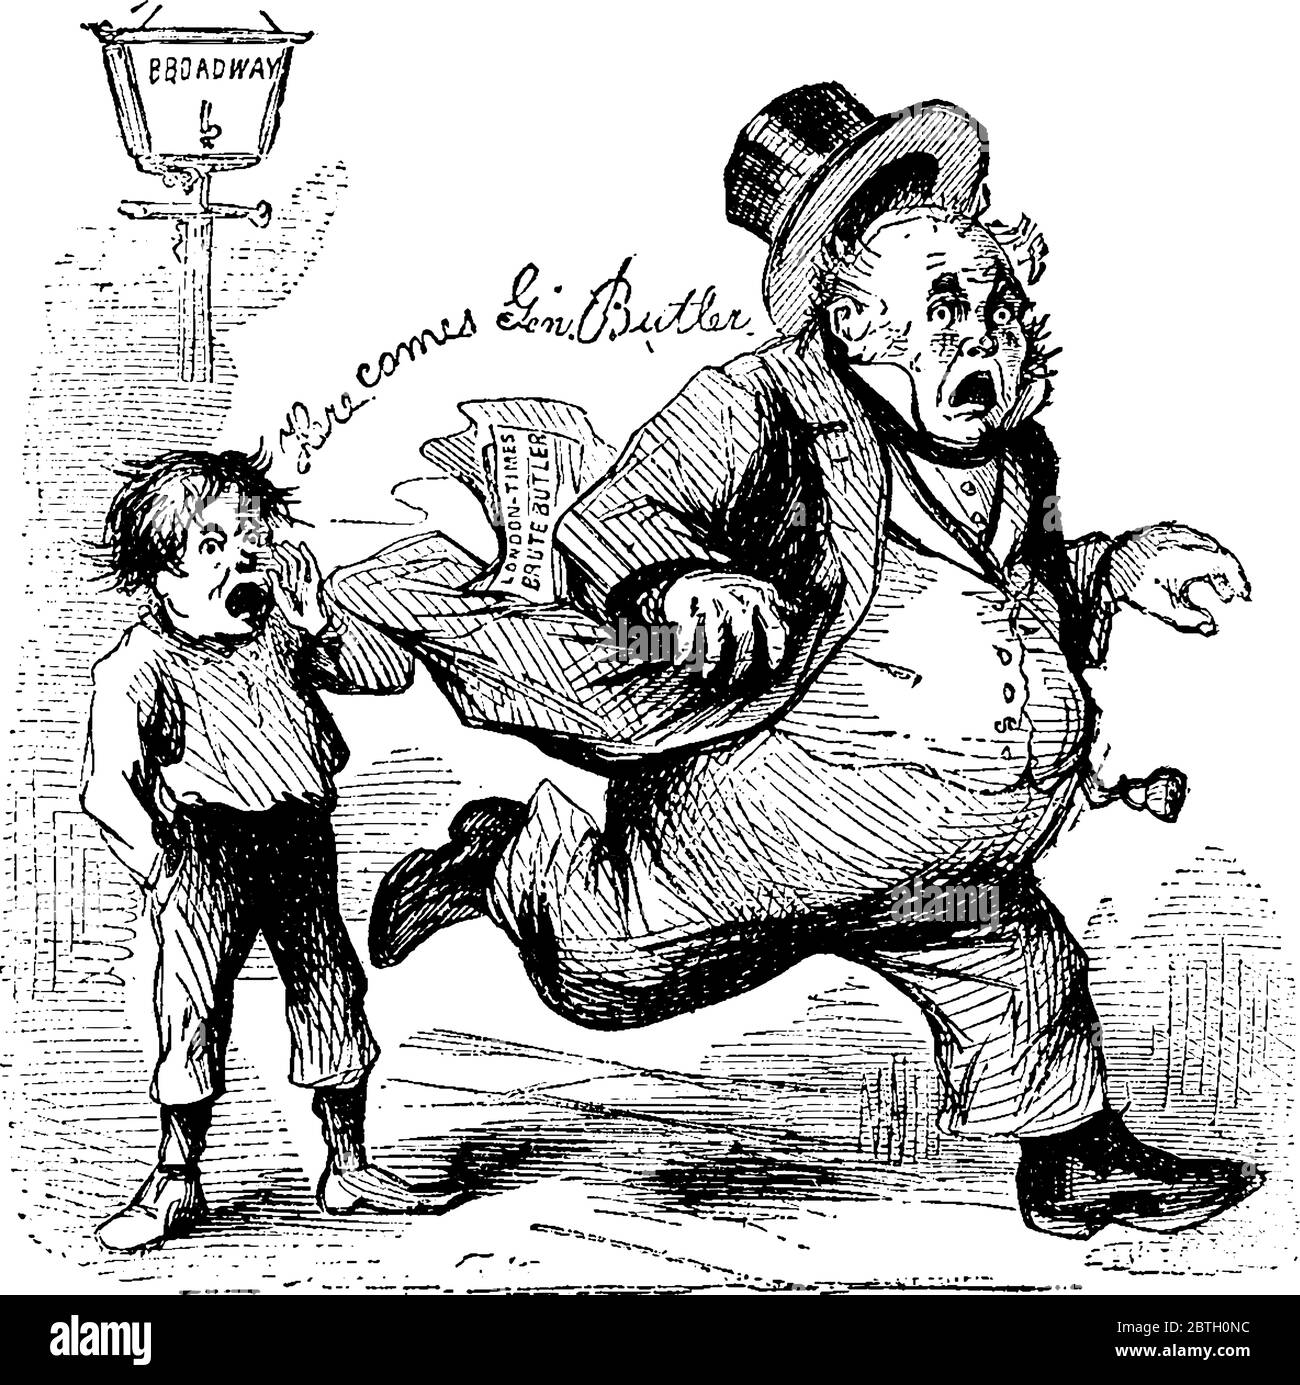 Thomas Nast prima foto cartoon, John Bull è tradizionalmente raffigurato come un uomo grasso che indossa un gilet., disegno di linea vintage o incisione illustri Illustrazione Vettoriale